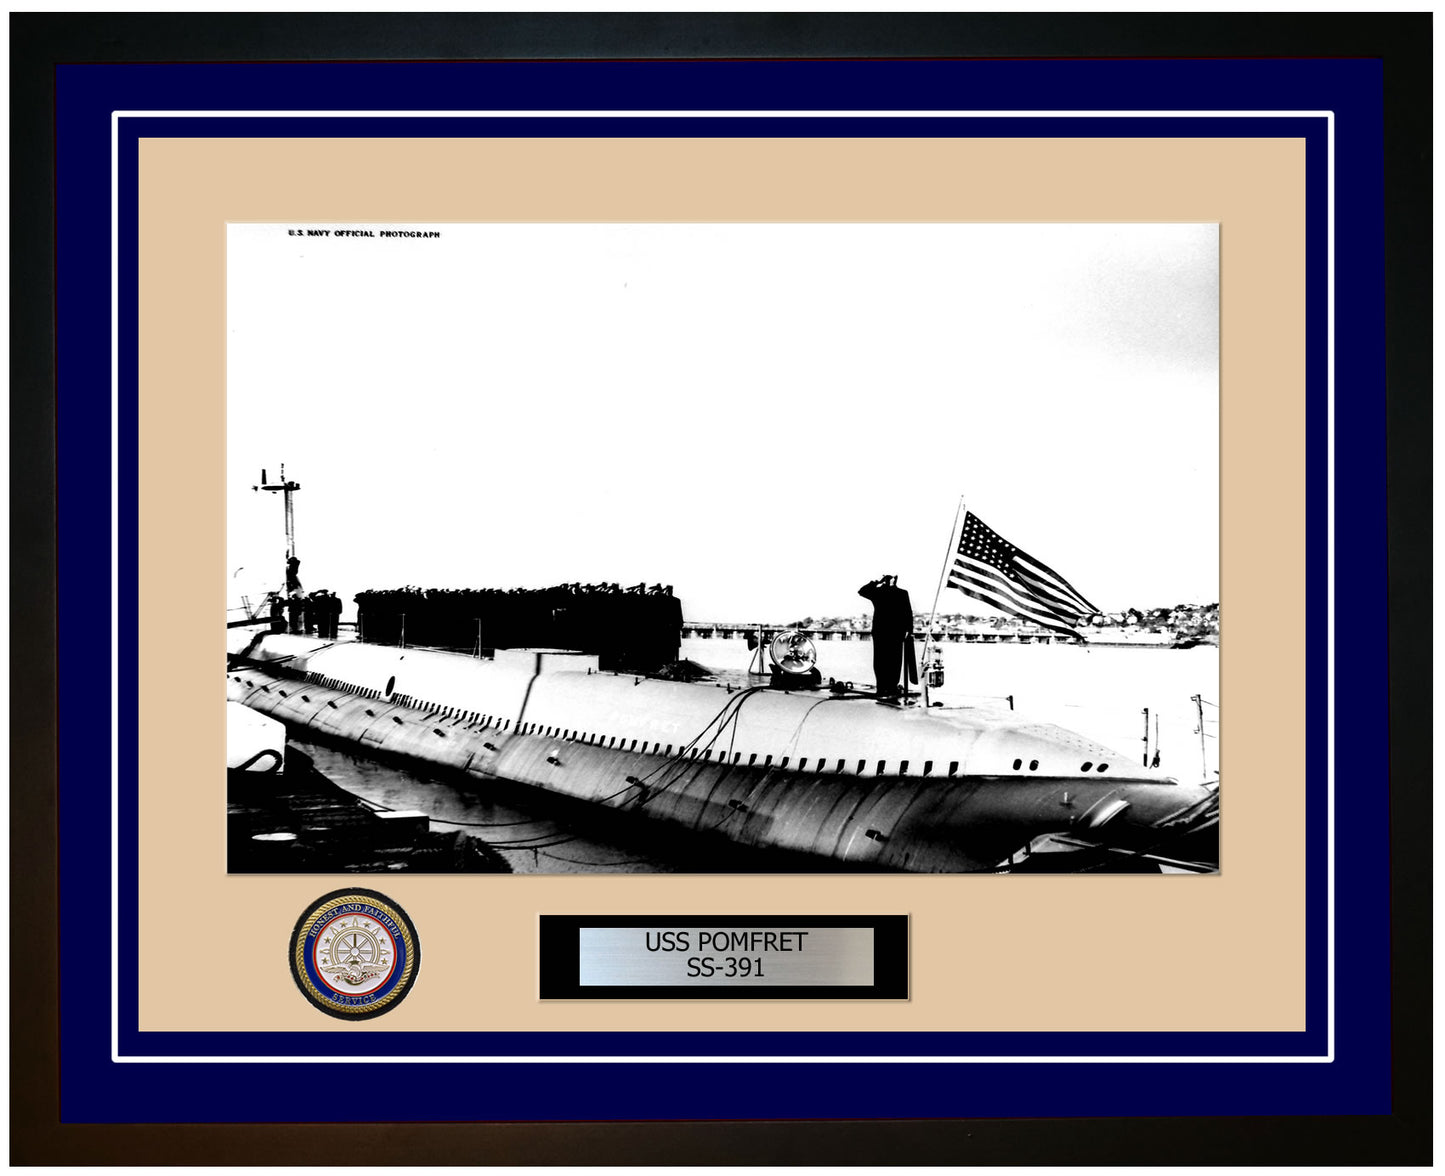 USS Pomfret SS-391 Framed Navy Ship Photo Blue